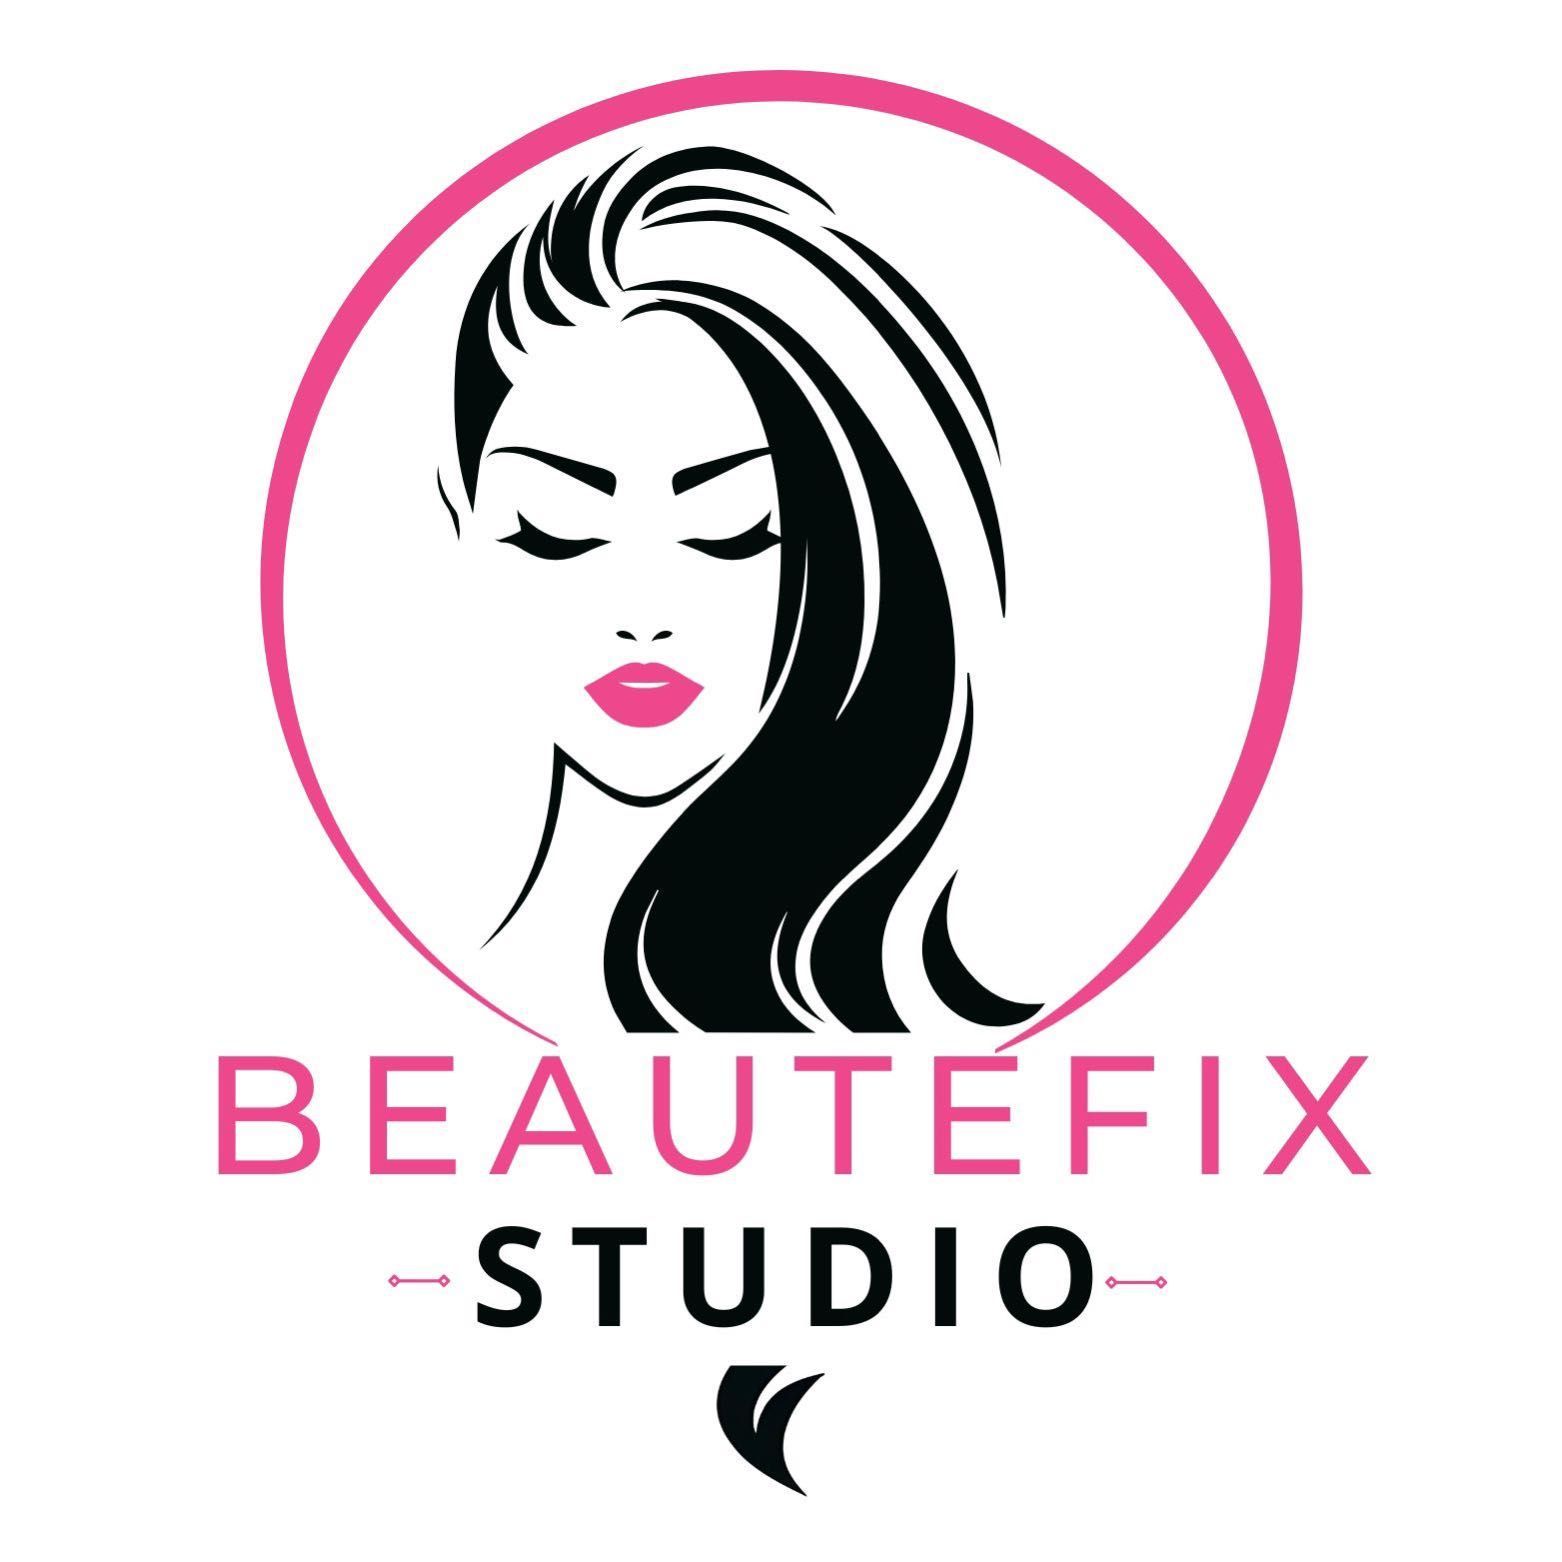 Beautefix_studio, 9 Topaas Ave, 2191, Sandton